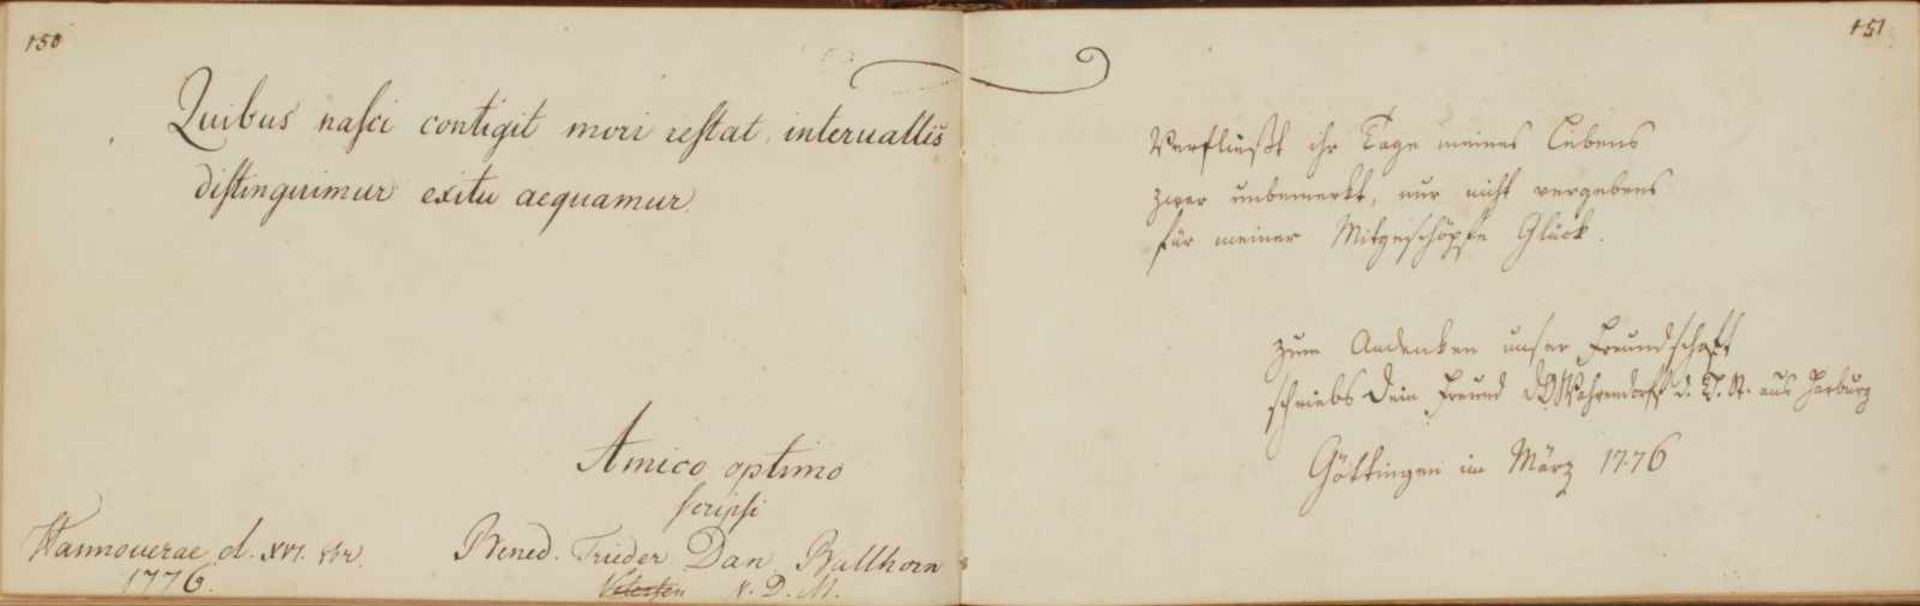 Schlegel, Georg Adolph Bonaventura.Fautoribus et amicis Sacrum. Vorwiegend dt. u.latein. Handschrift